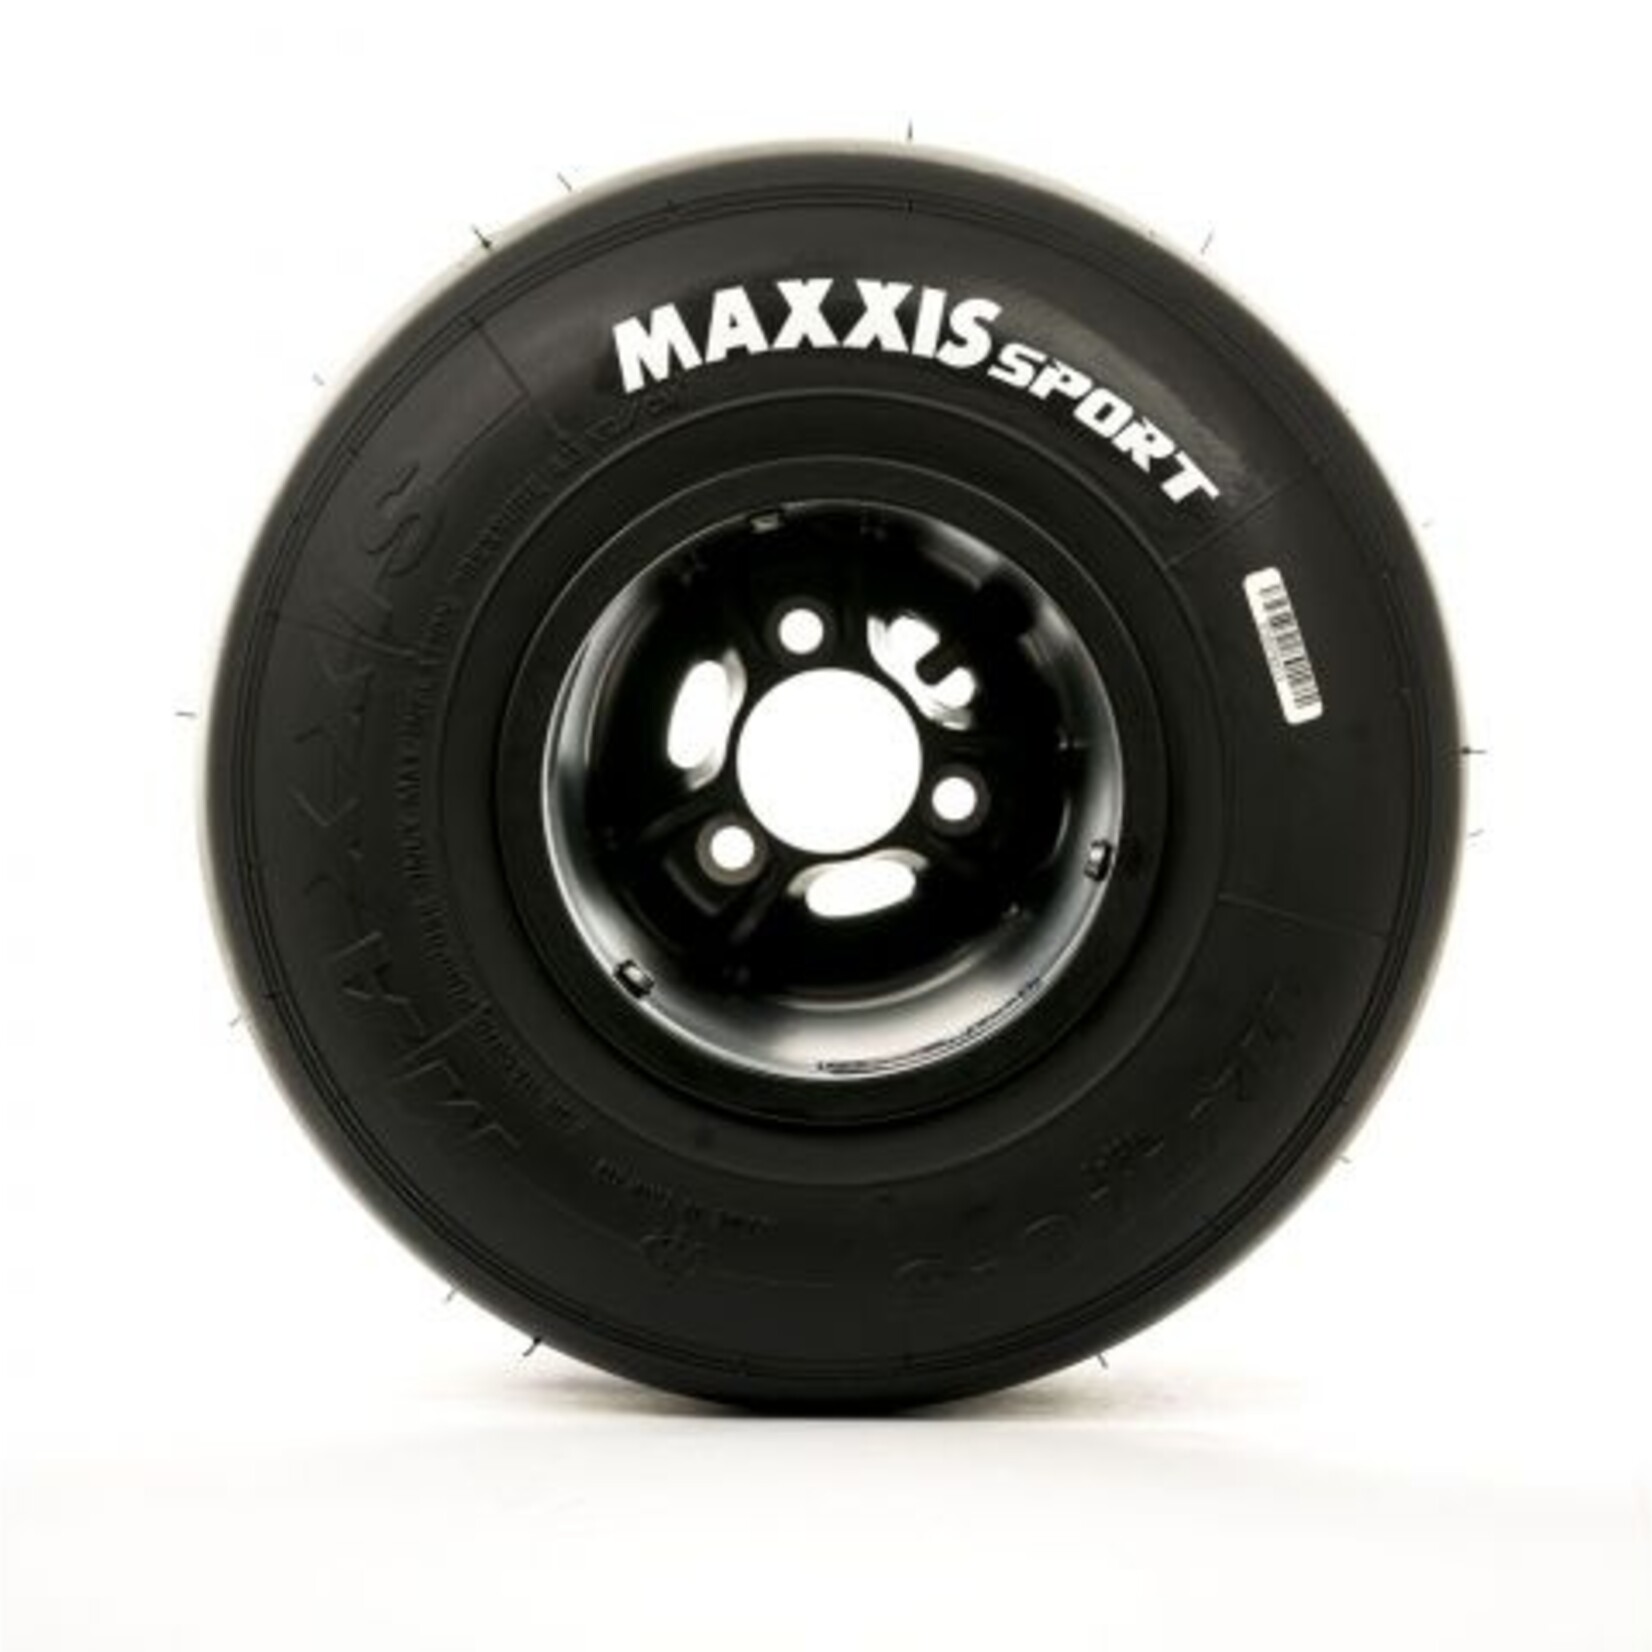 Maxxis MAXXIS SPORT 11X7.10-5 (achterband)